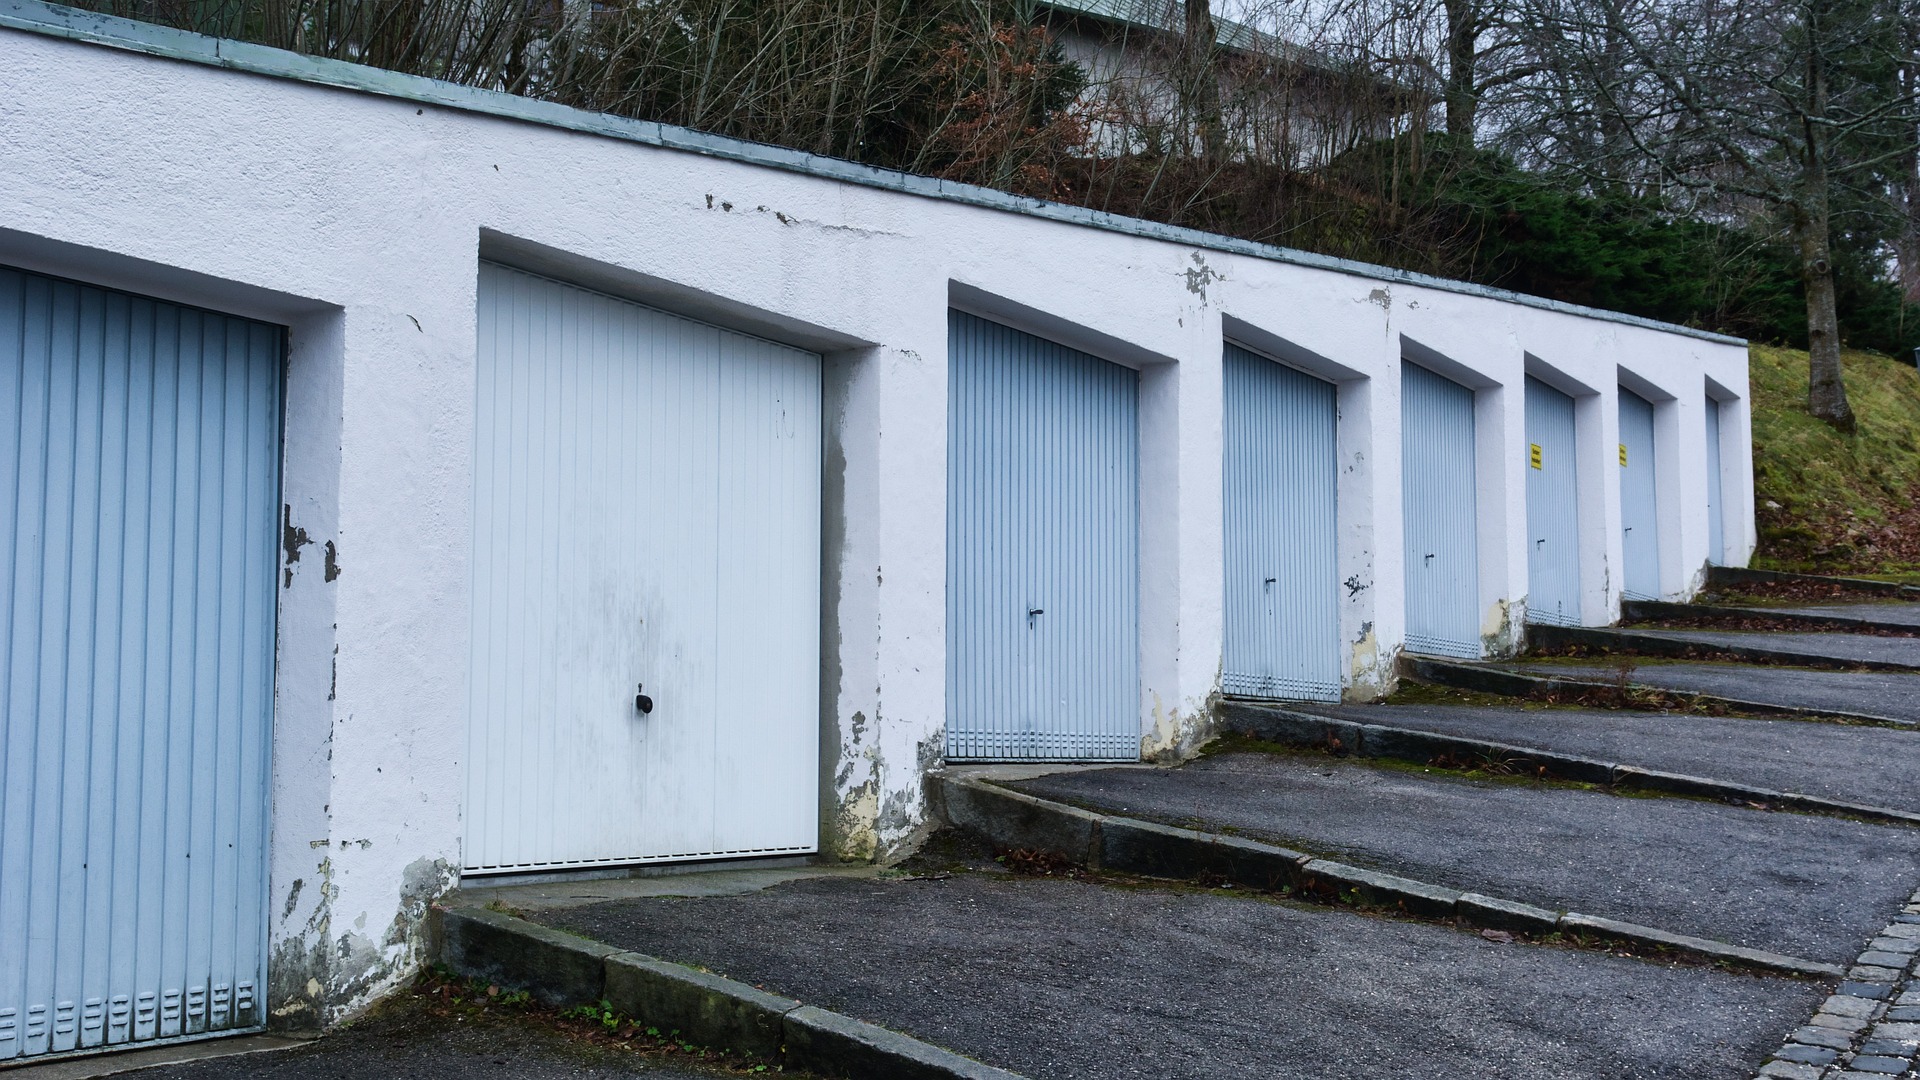 image of multiple garage doors